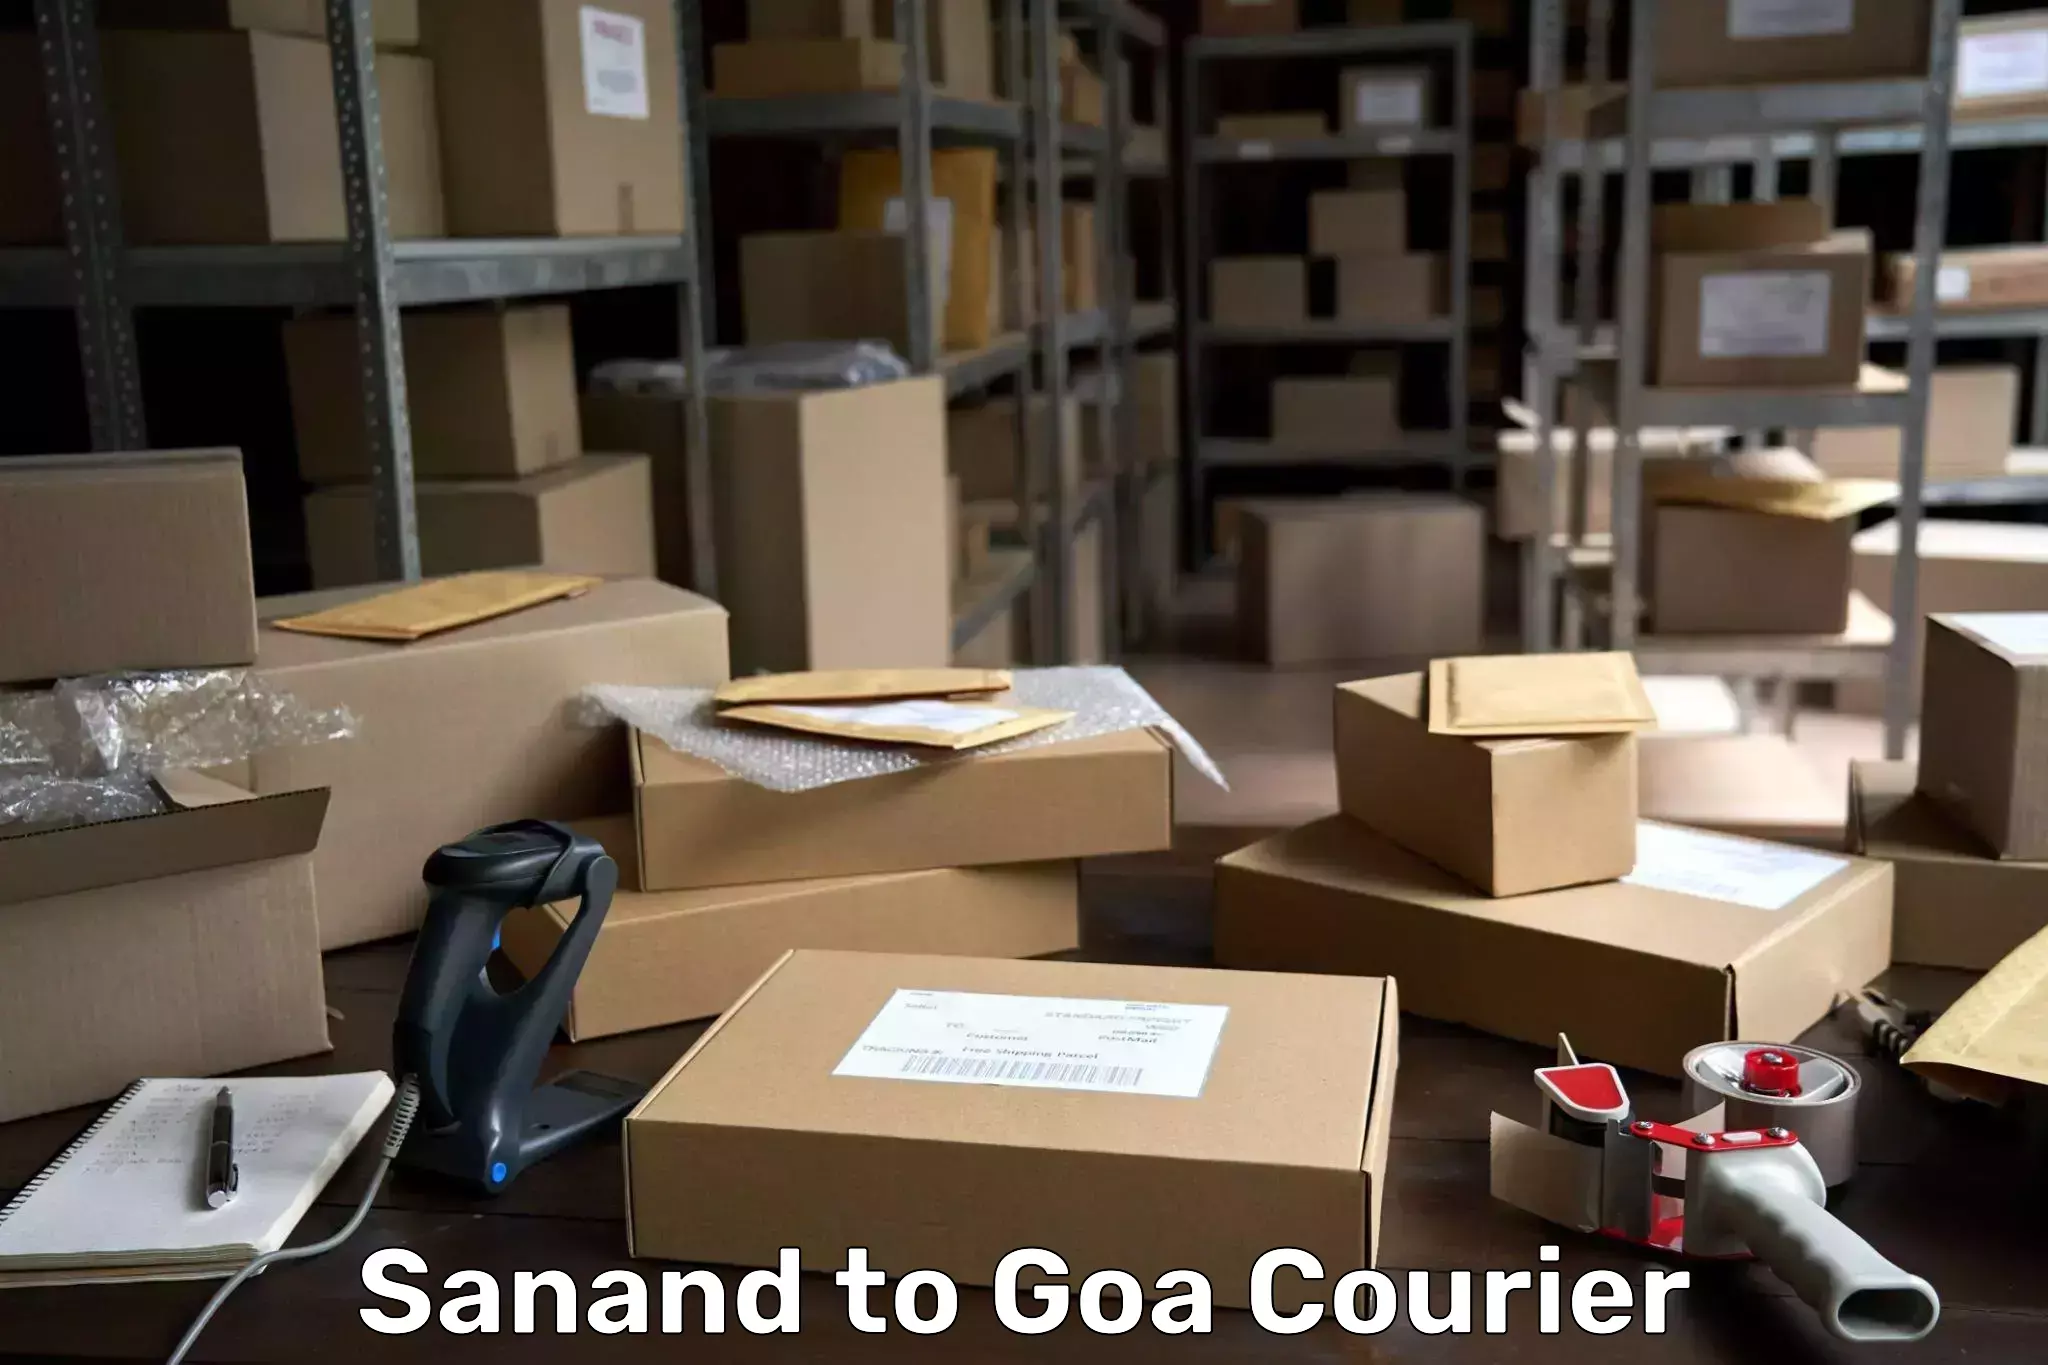 Global parcel delivery Sanand to Vasco da Gama